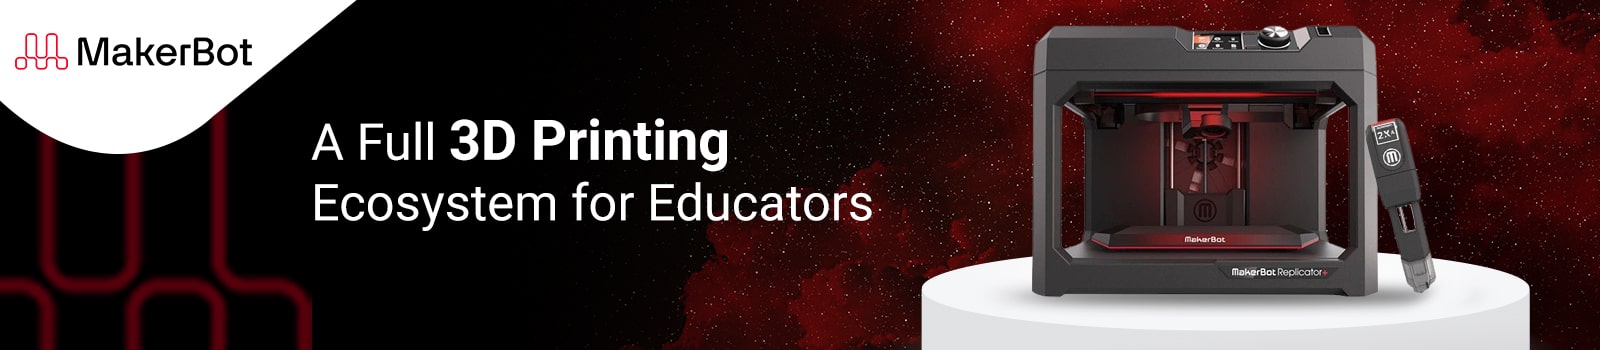 MakerBot: 3D Printers for Educators & Professionals